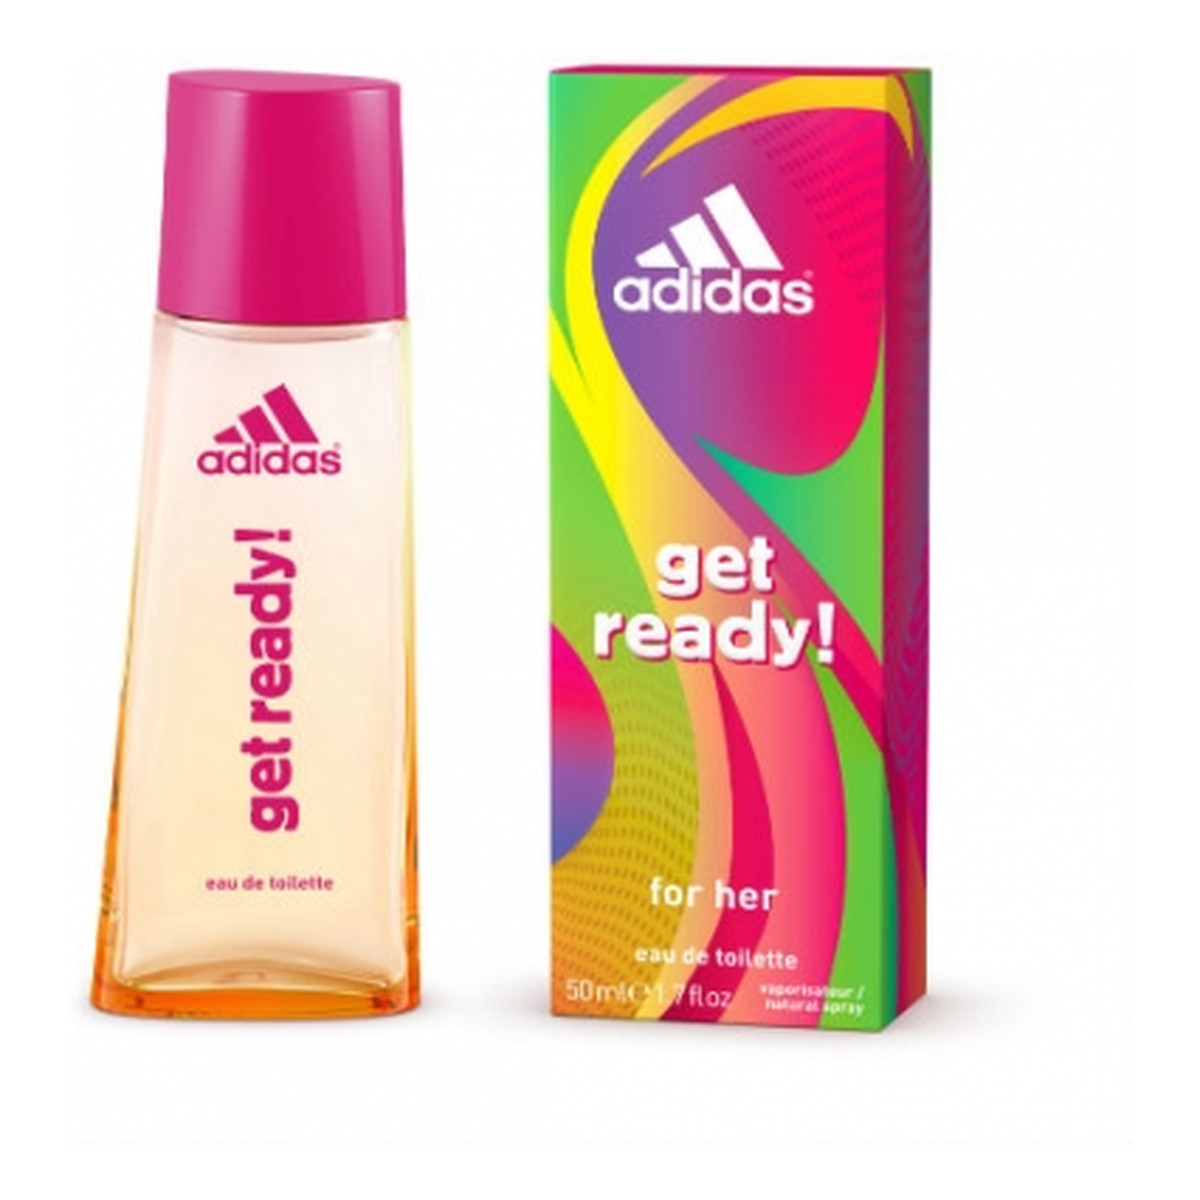 Adidas Women Get Ready! Woda Toaletowa 50ml